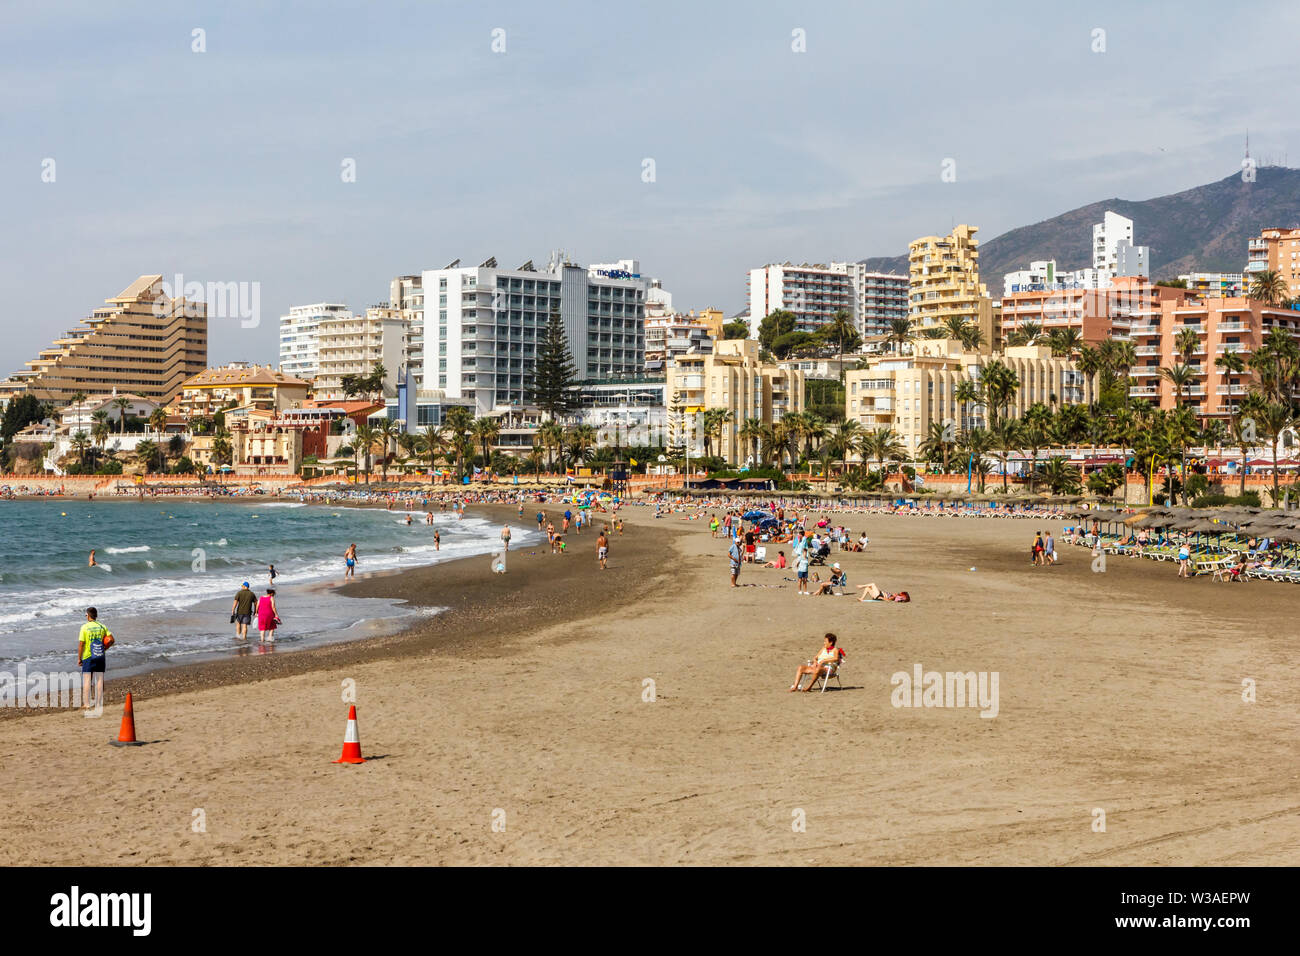 Benalmádena, Spanien - 4. September 2015: die Leute am Strand an einem sonnigen Tag. Die Gegend ist ein beliebtes Reiseziel. Stockfoto